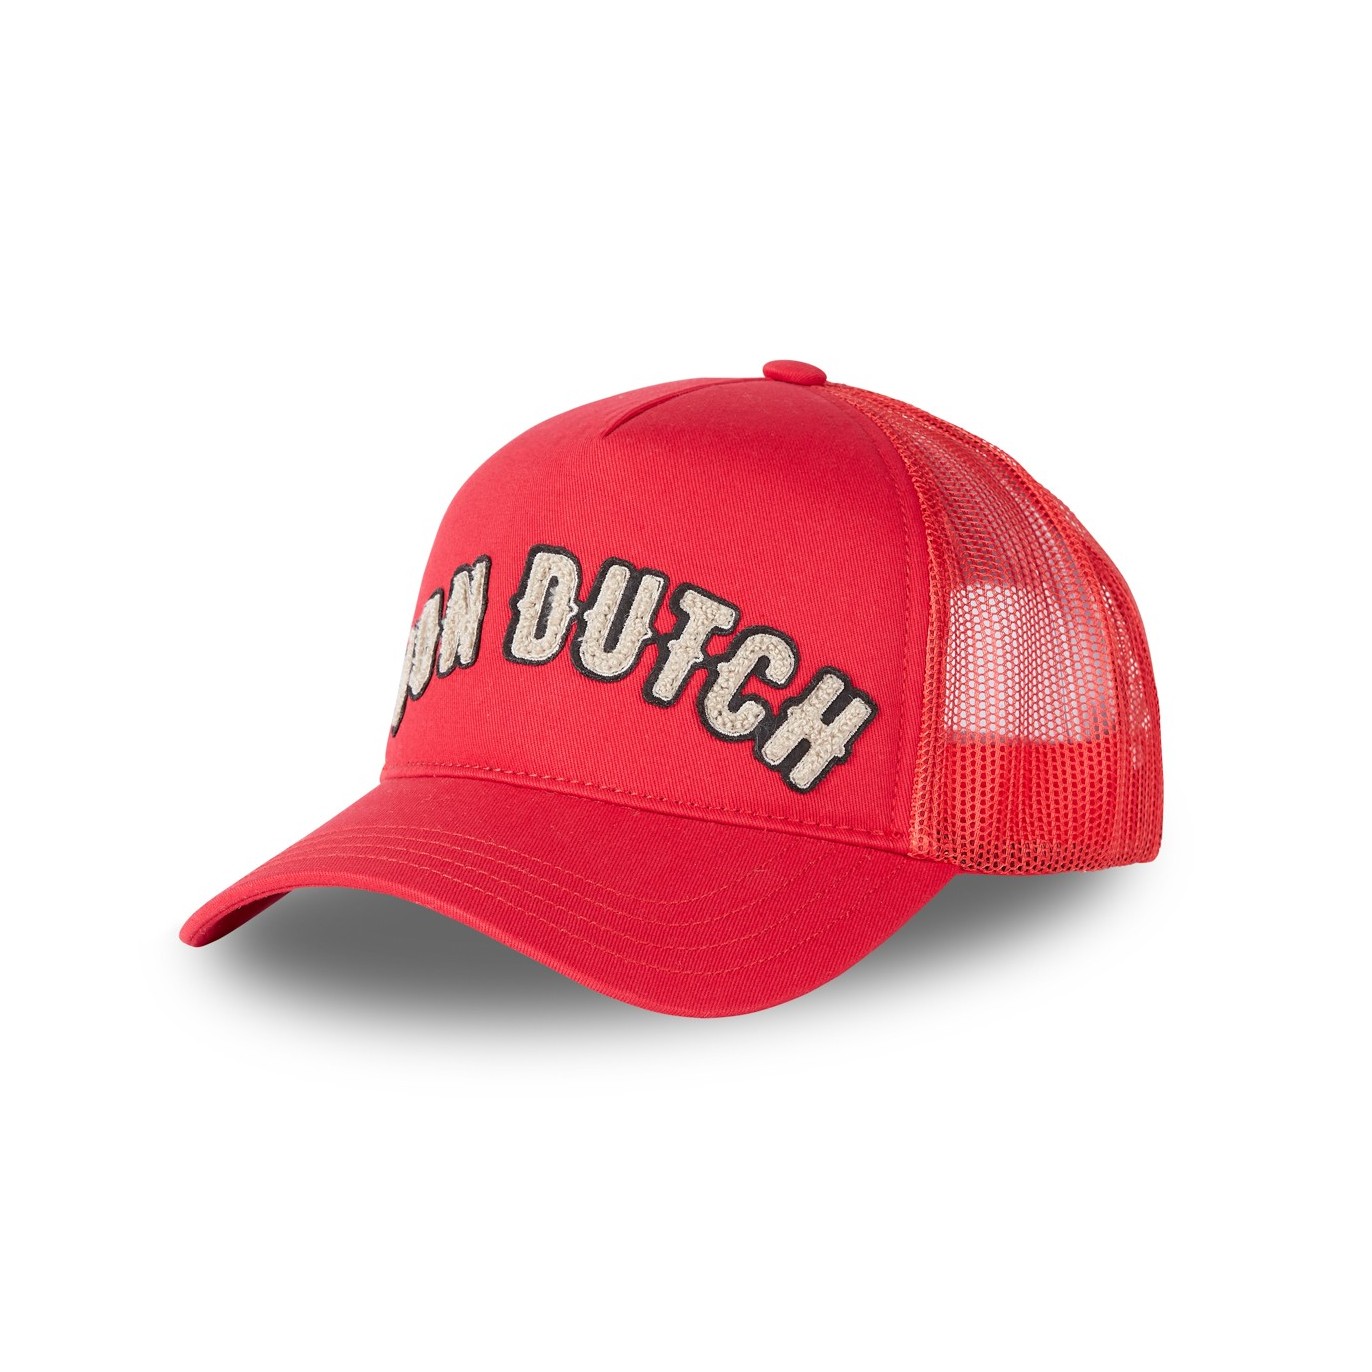 Casquette Trucker filet Lofb rouge Von Dutch - Von Dutch